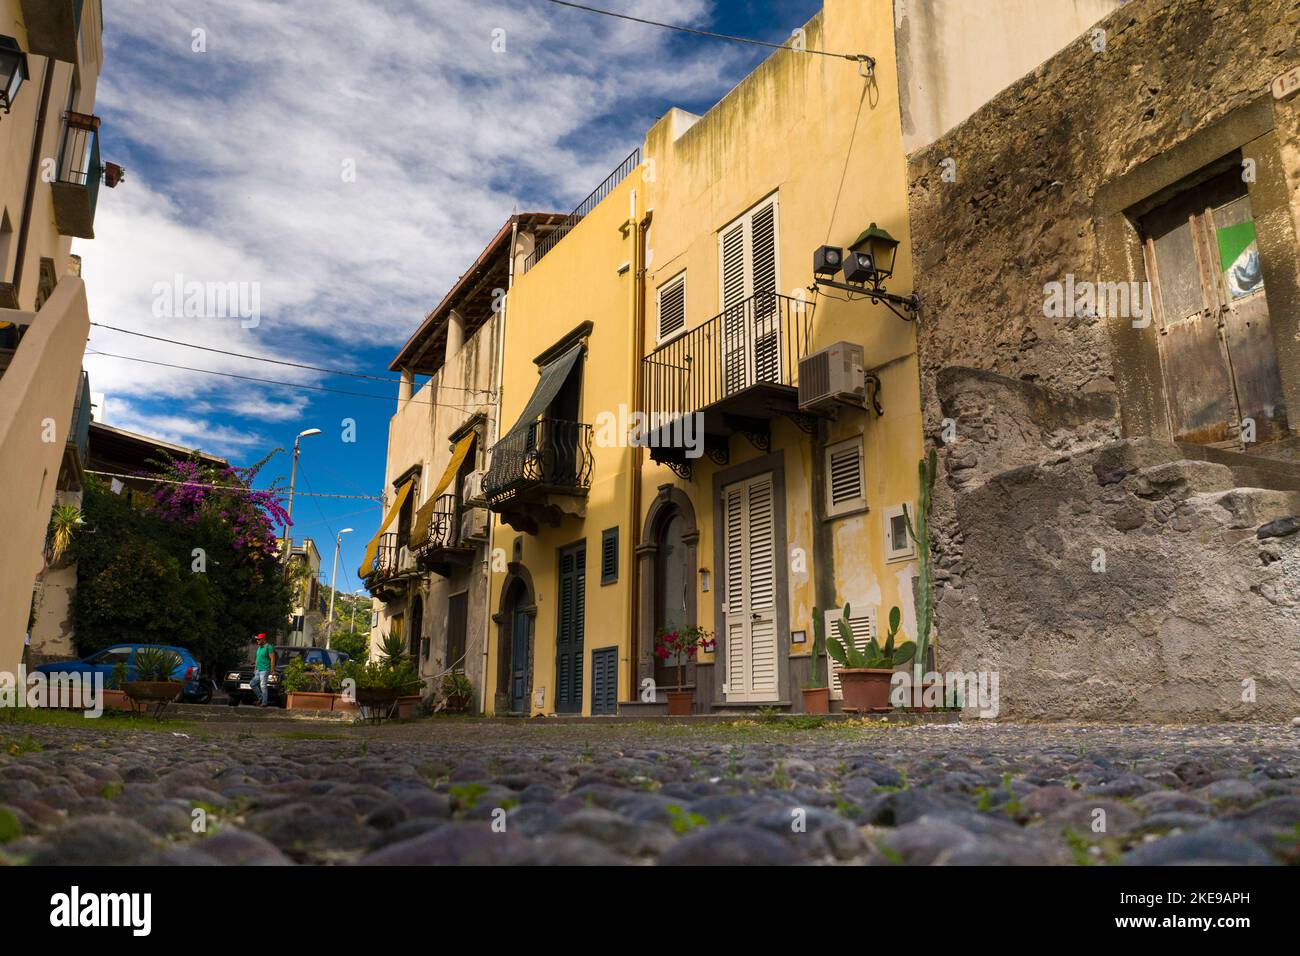 Hochwinkelansicht der Stadt Lipari und der antiken Festung Lipari Island, Äolischen Inseln, Italien Stockfoto